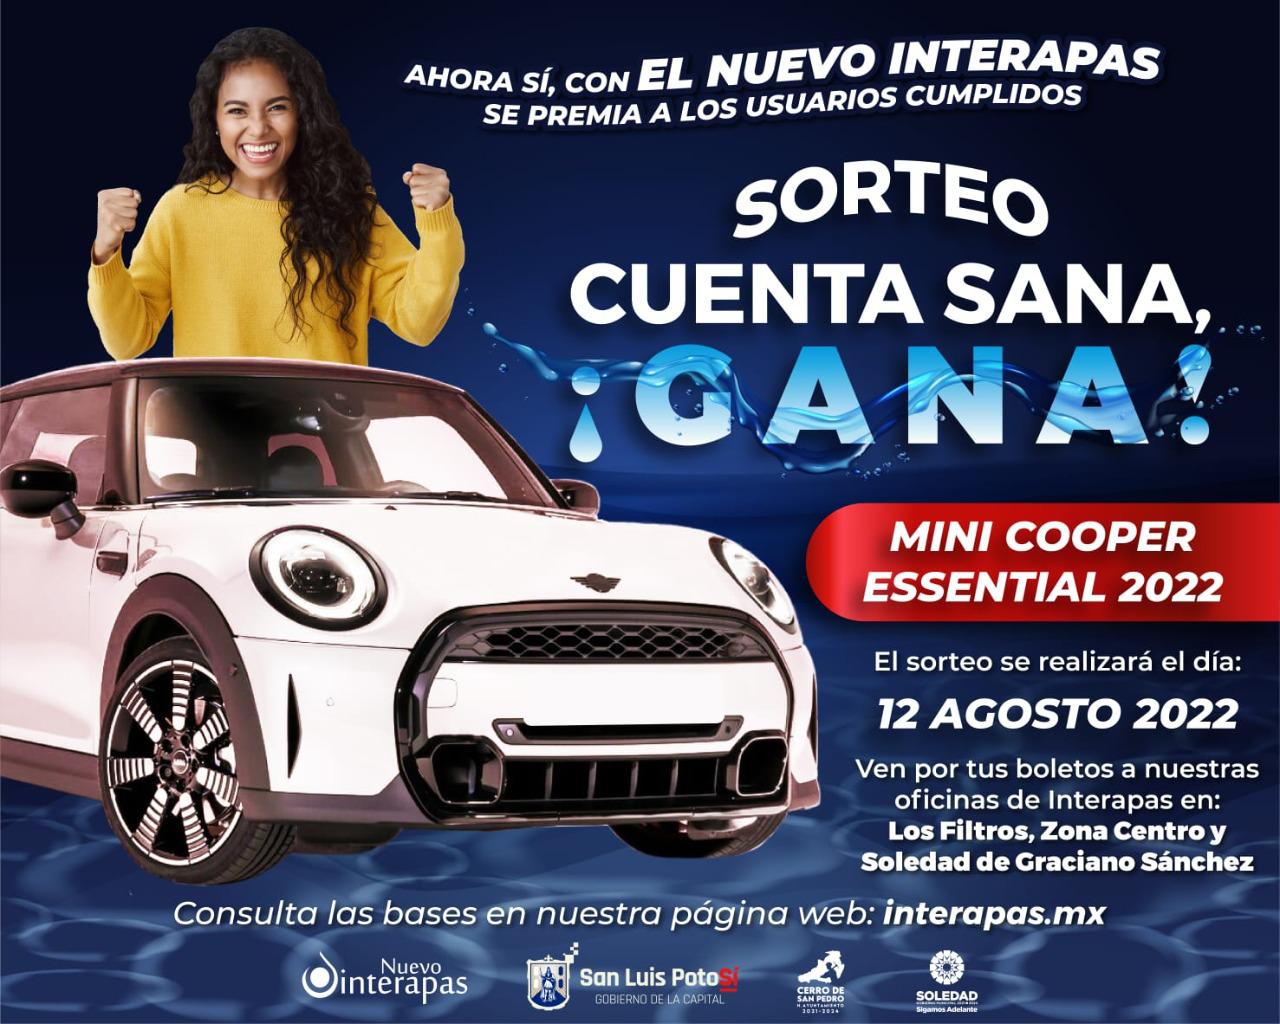  Interapas ha entregado más de 100 mil boletos para sorteo de Mini Cooper a usuarios cumplidos en el pago de agua